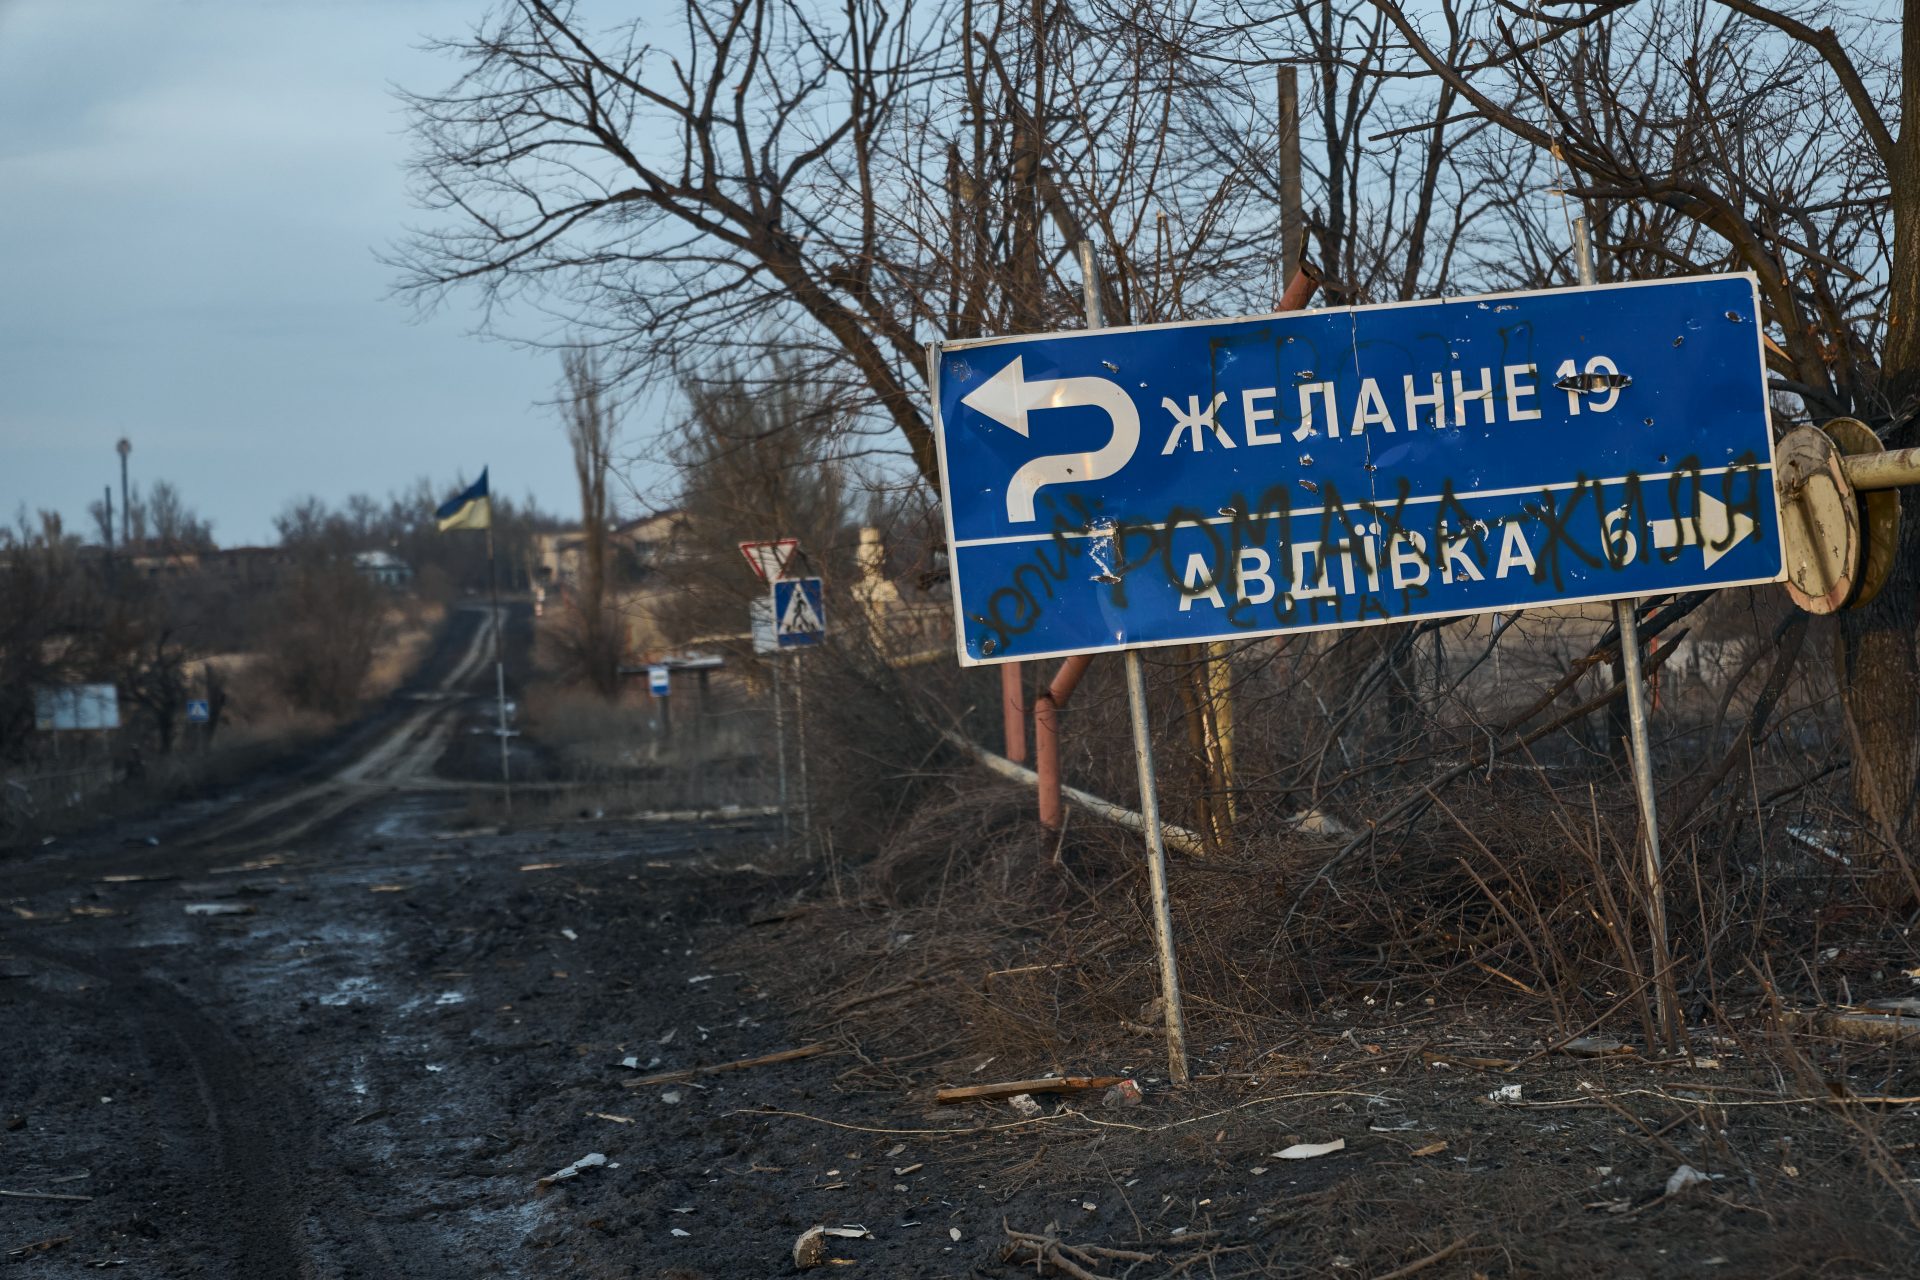 The loss of Avdiivka 